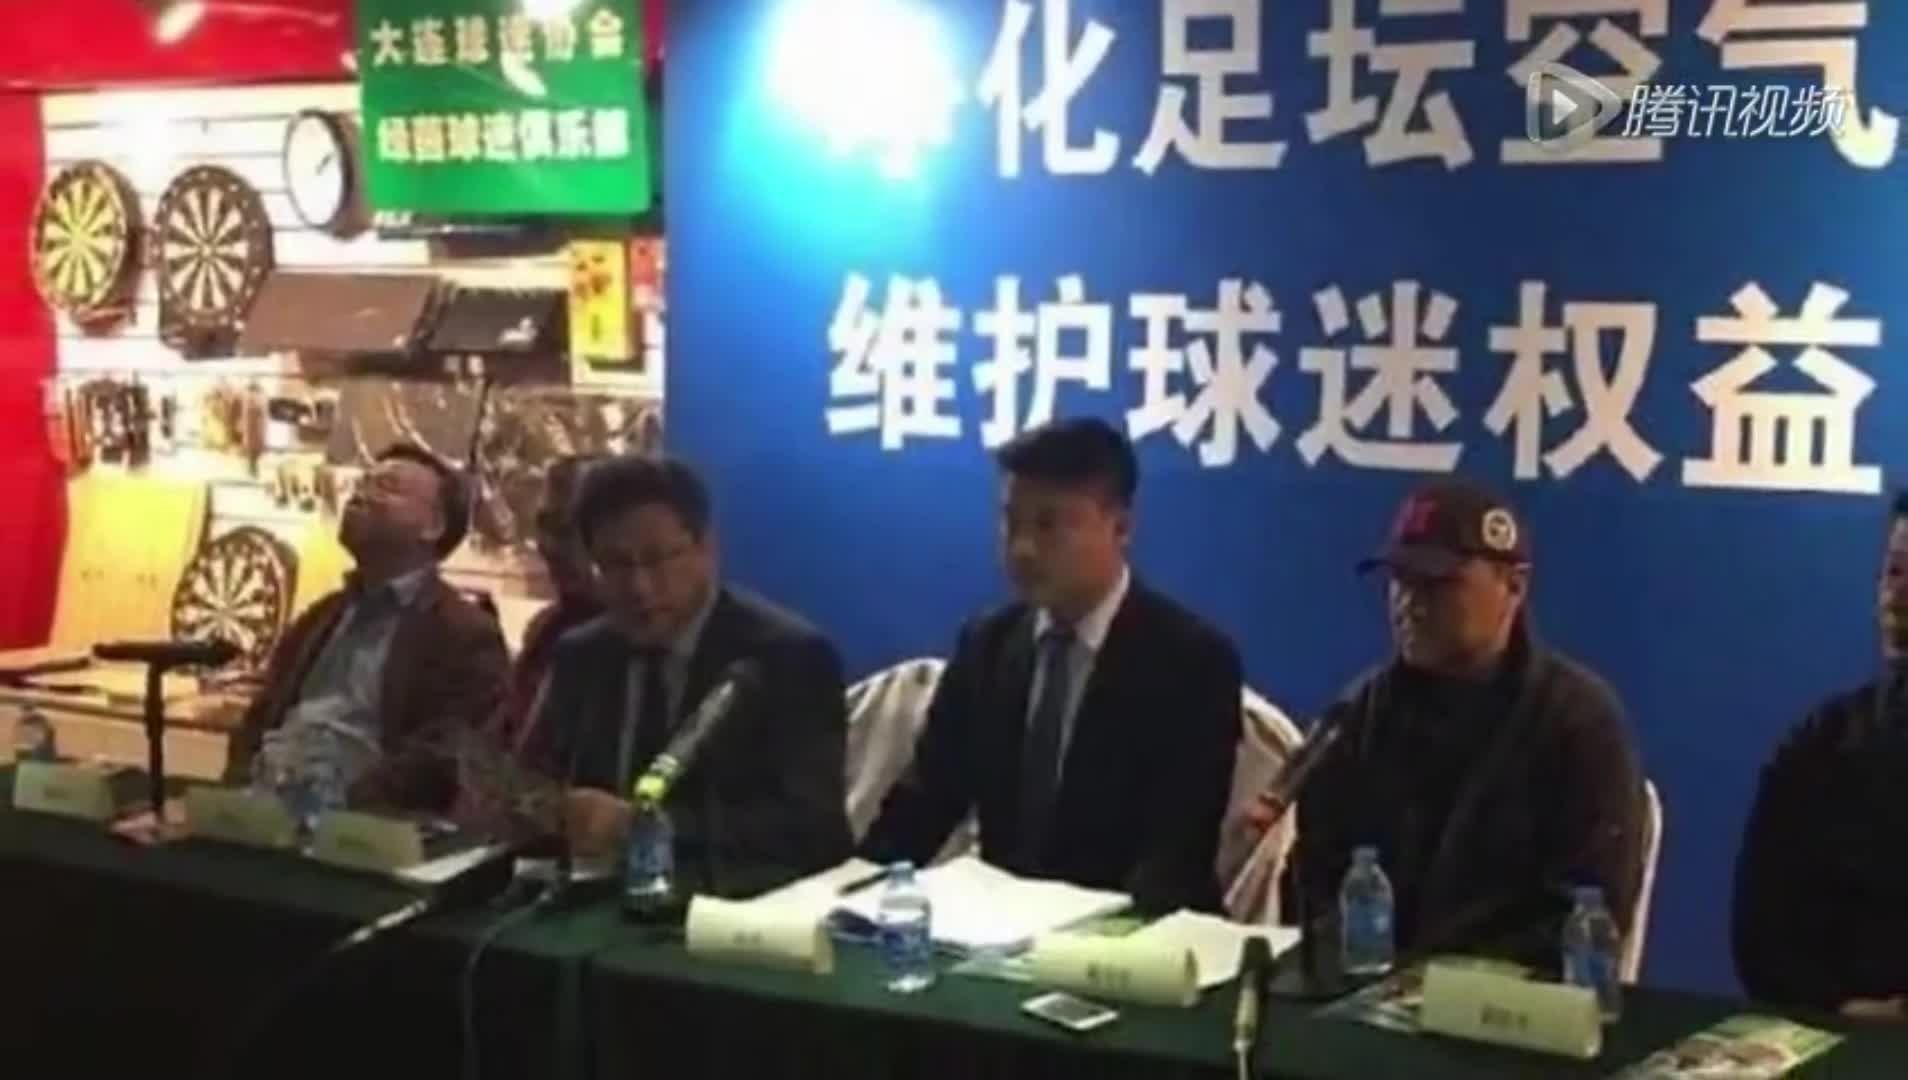 2015年大连球迷会曾实名举报河北华夏违纪违法 收买对手